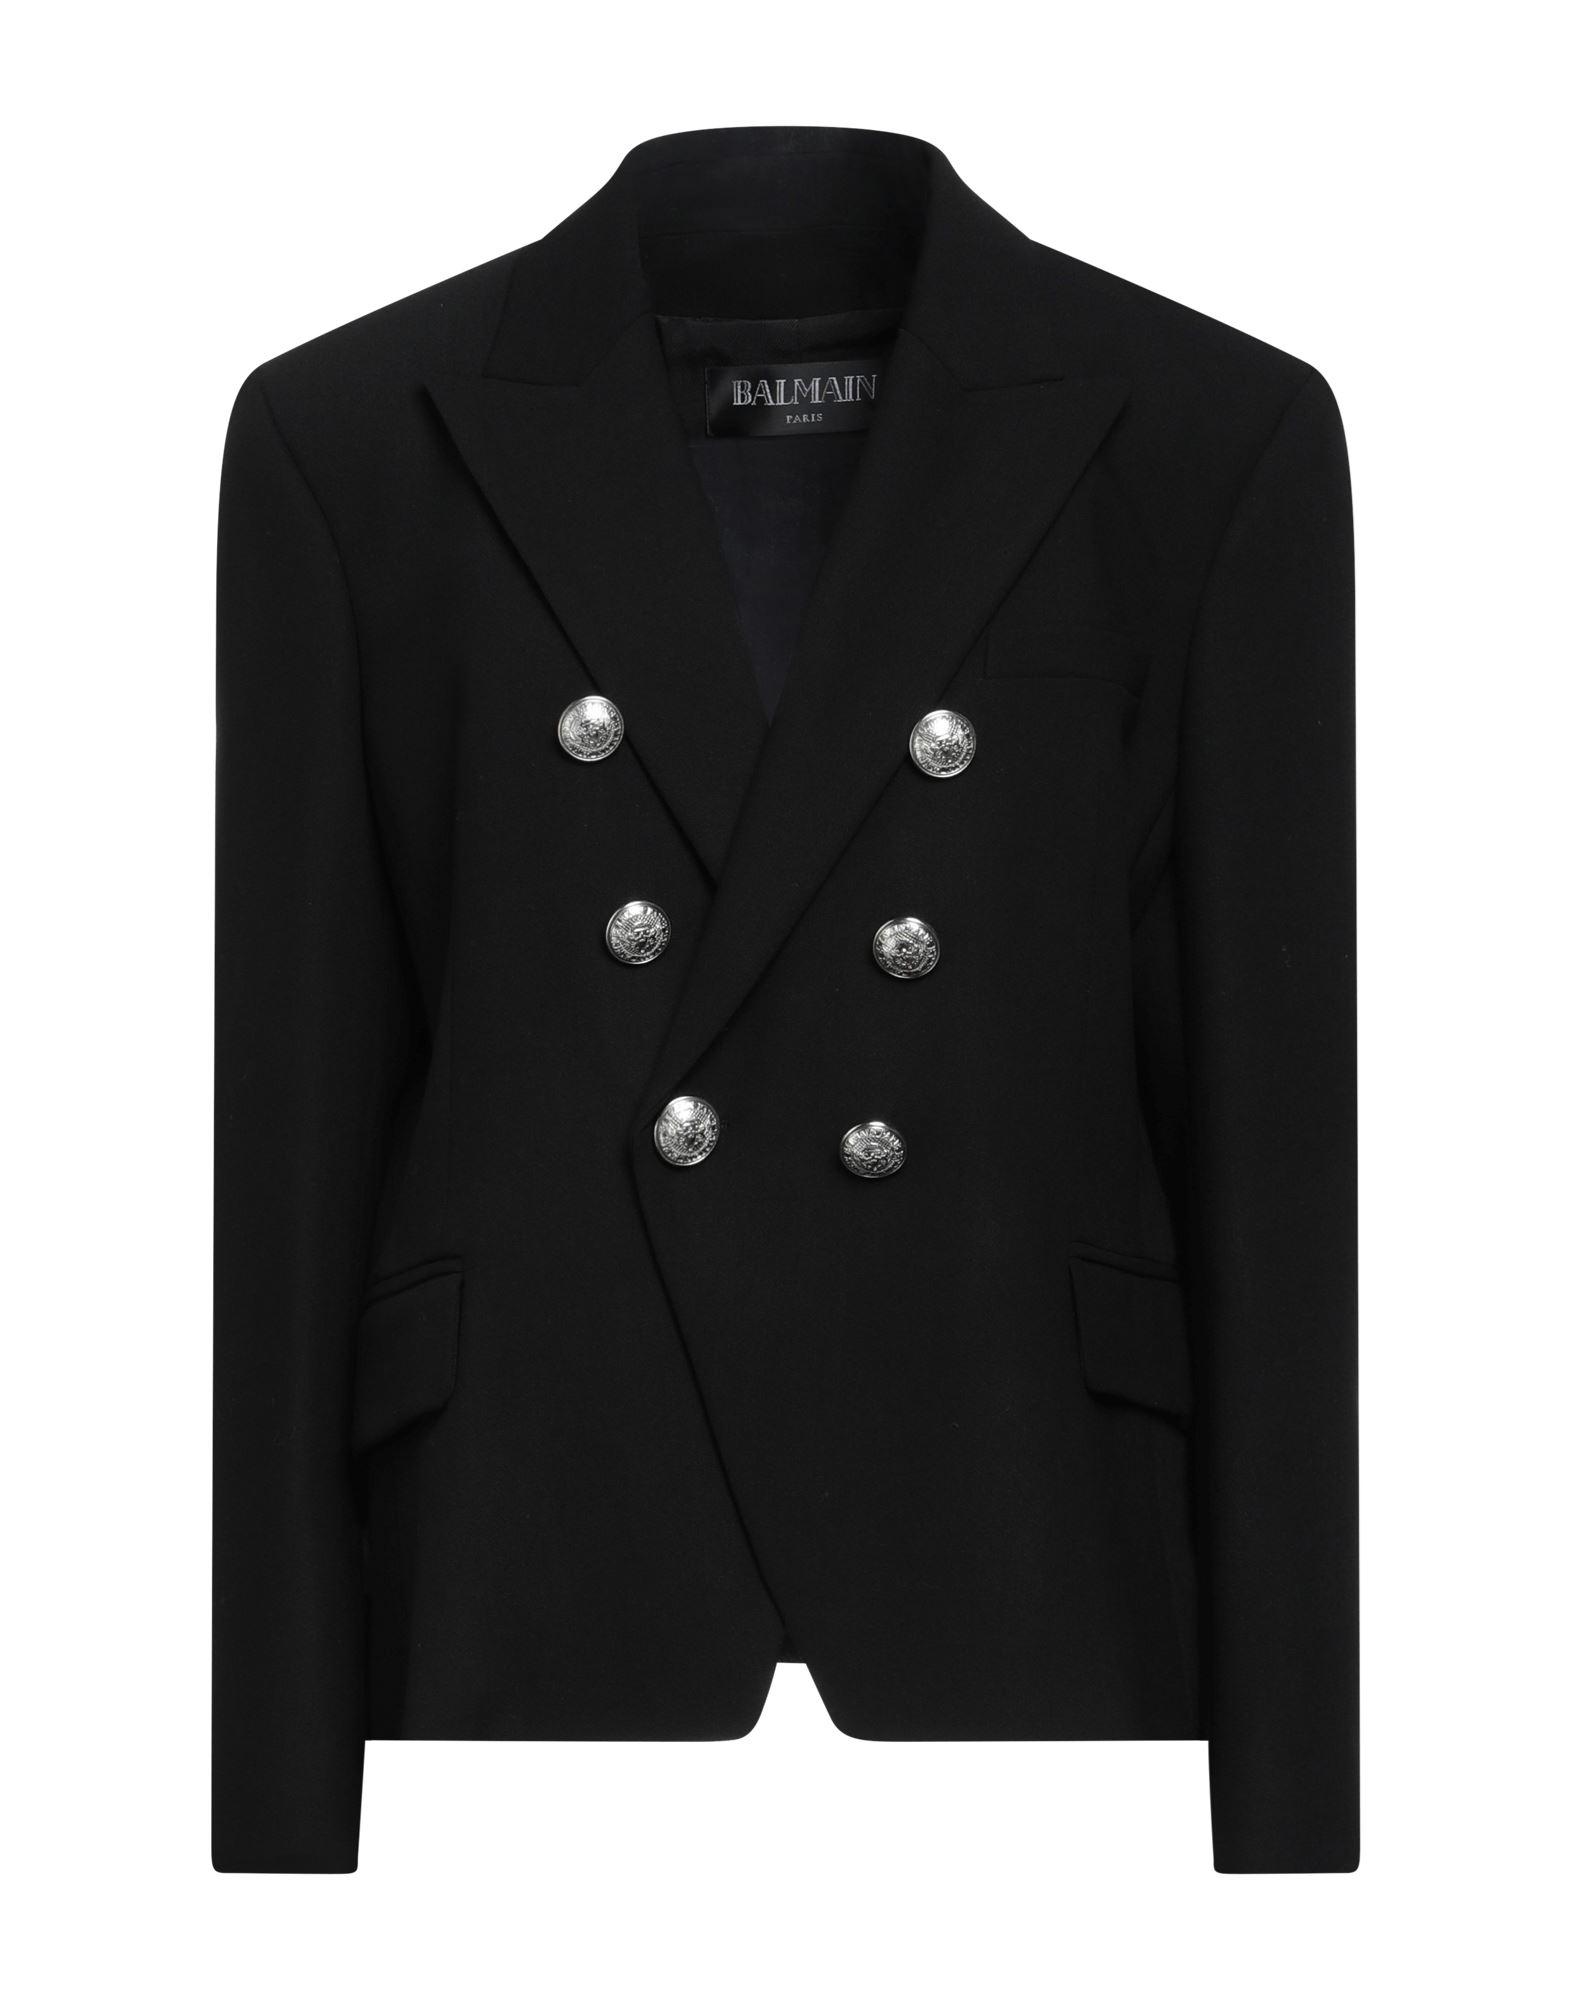 Balmain Flannel Suit Jacket in Black | Lyst